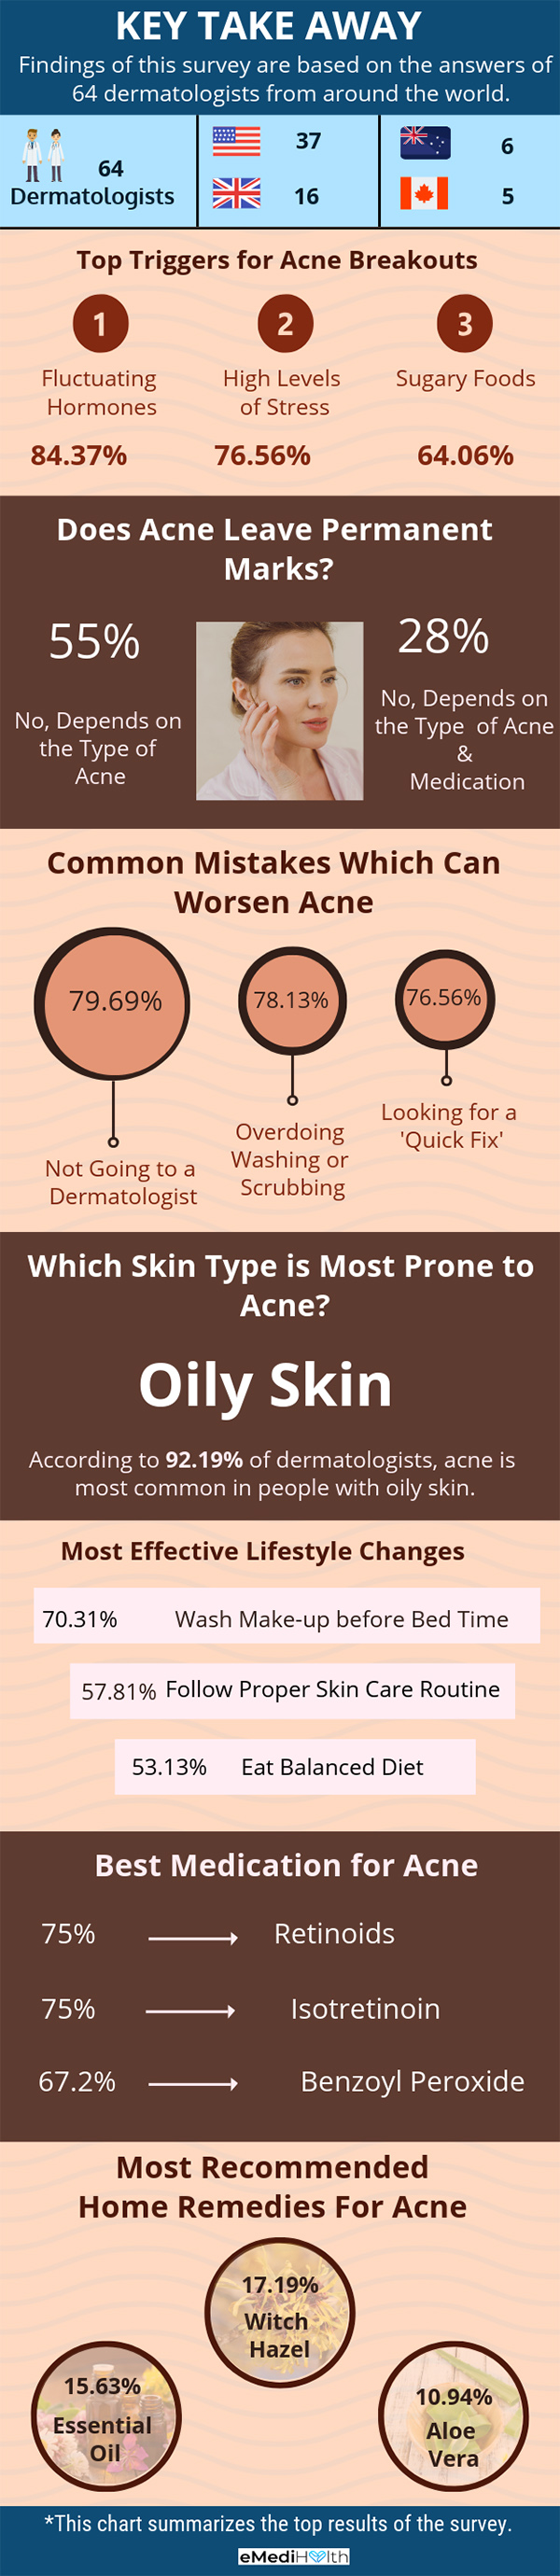 acne survey takeaway